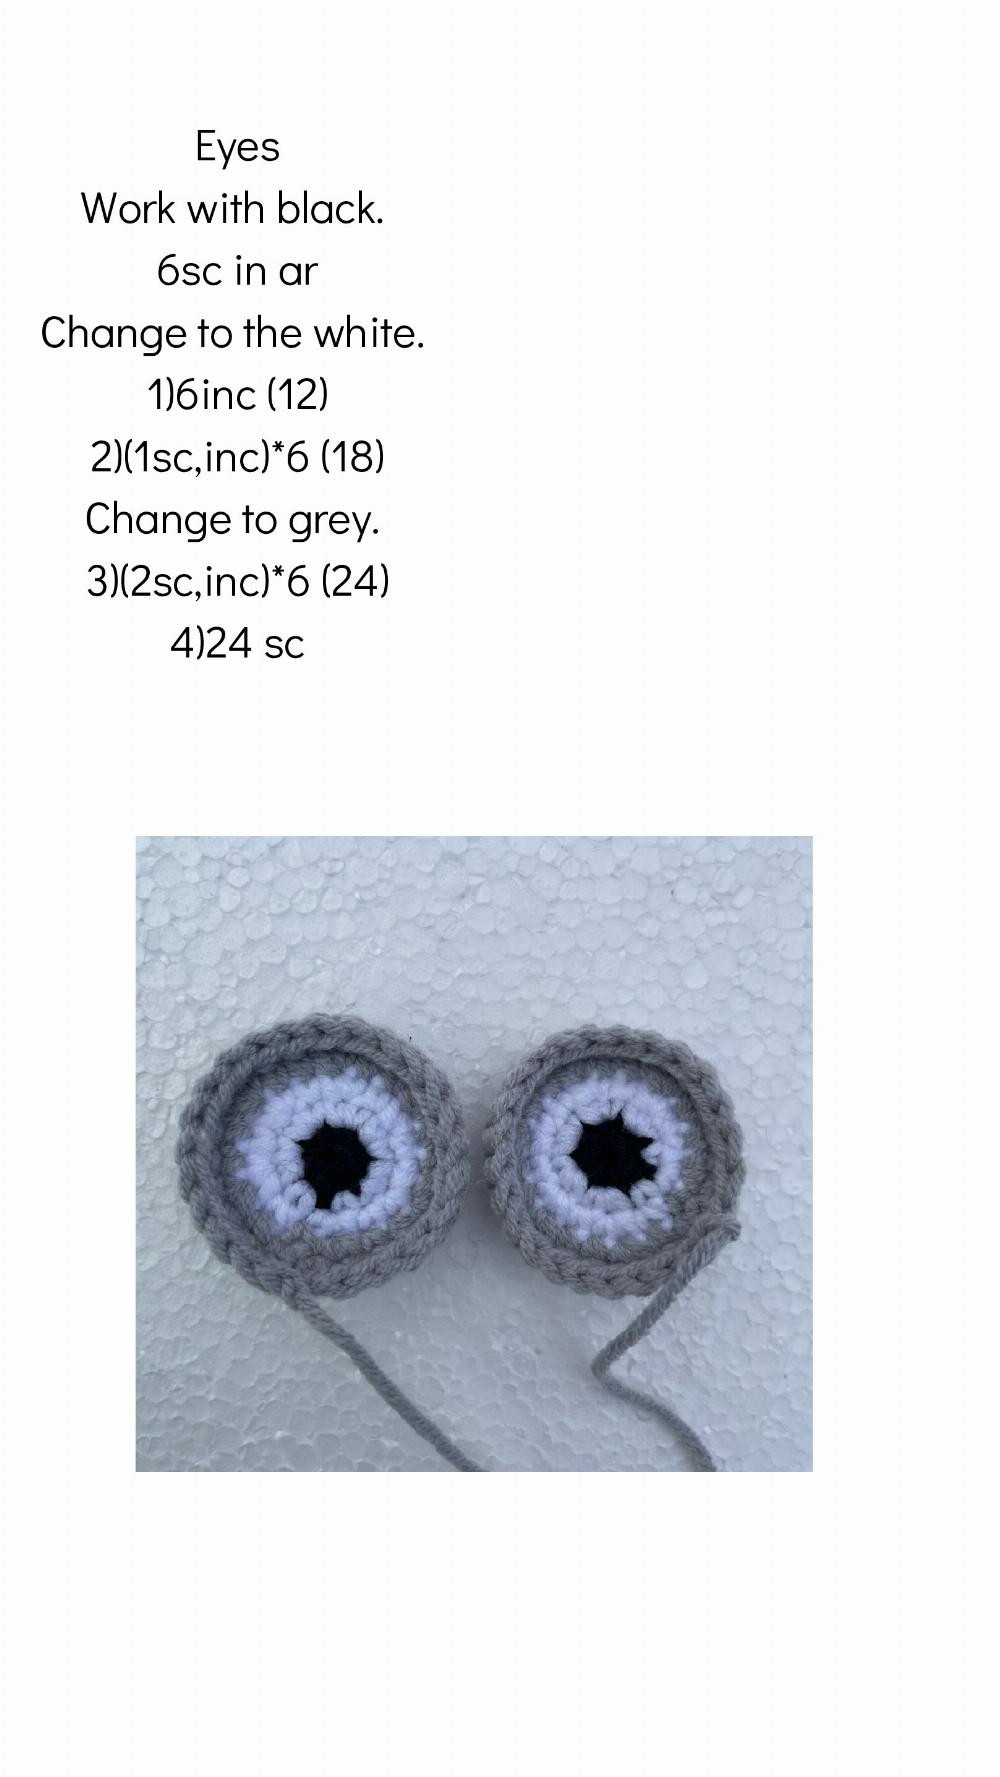 Crochet pattern Fidget sensory stretchable toy Owl